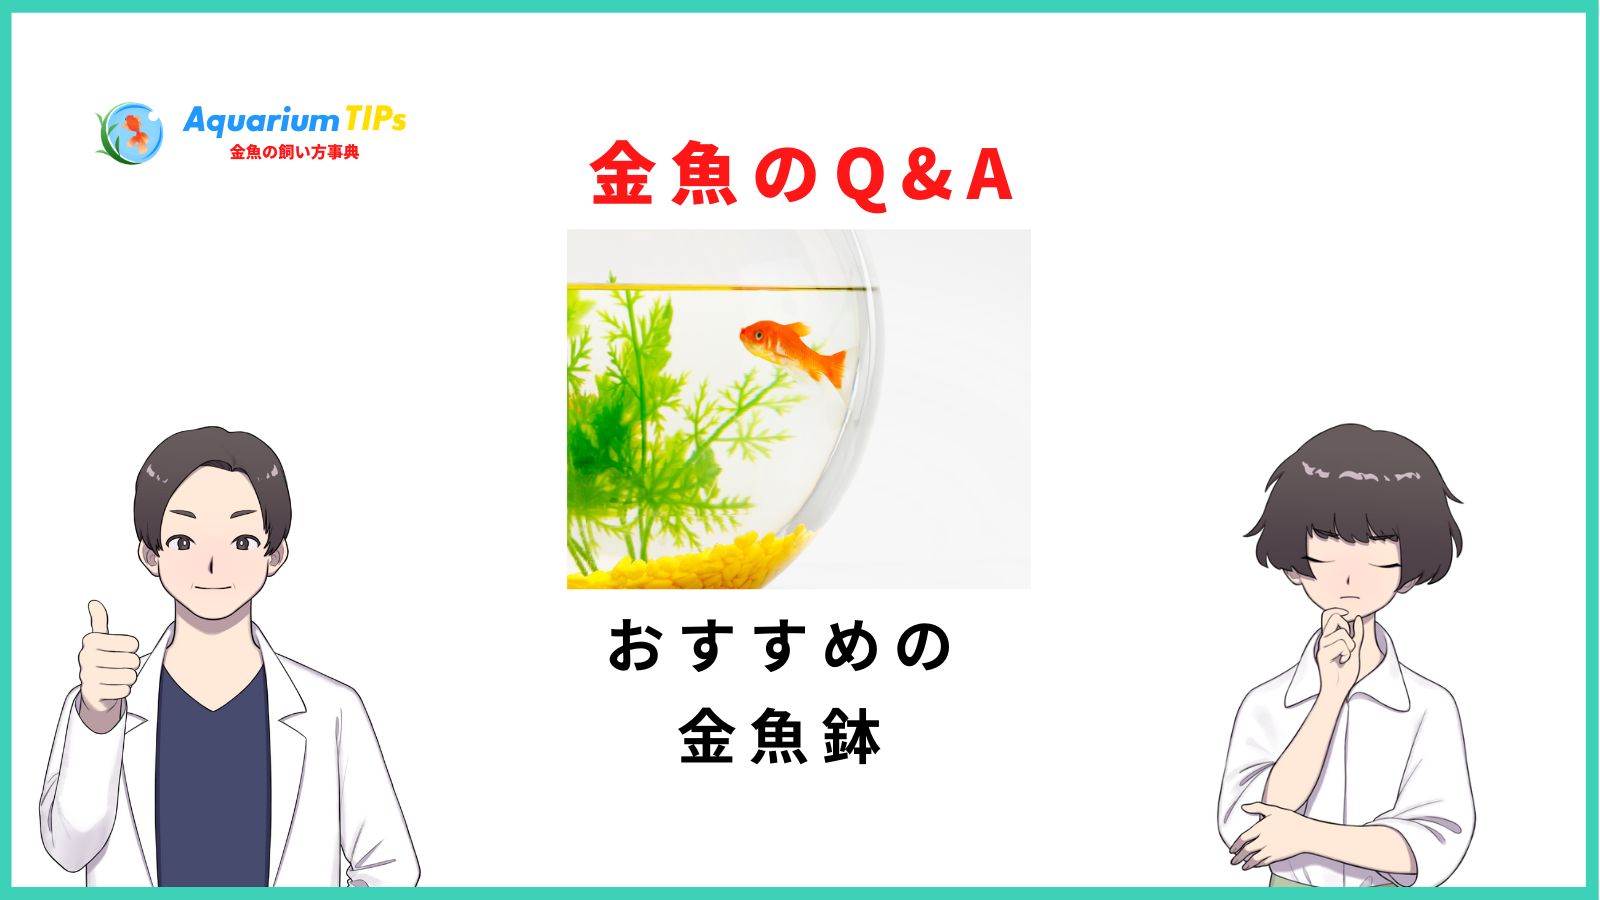 おすすめの金魚鉢(おしゃれレトロ和風)人気18選